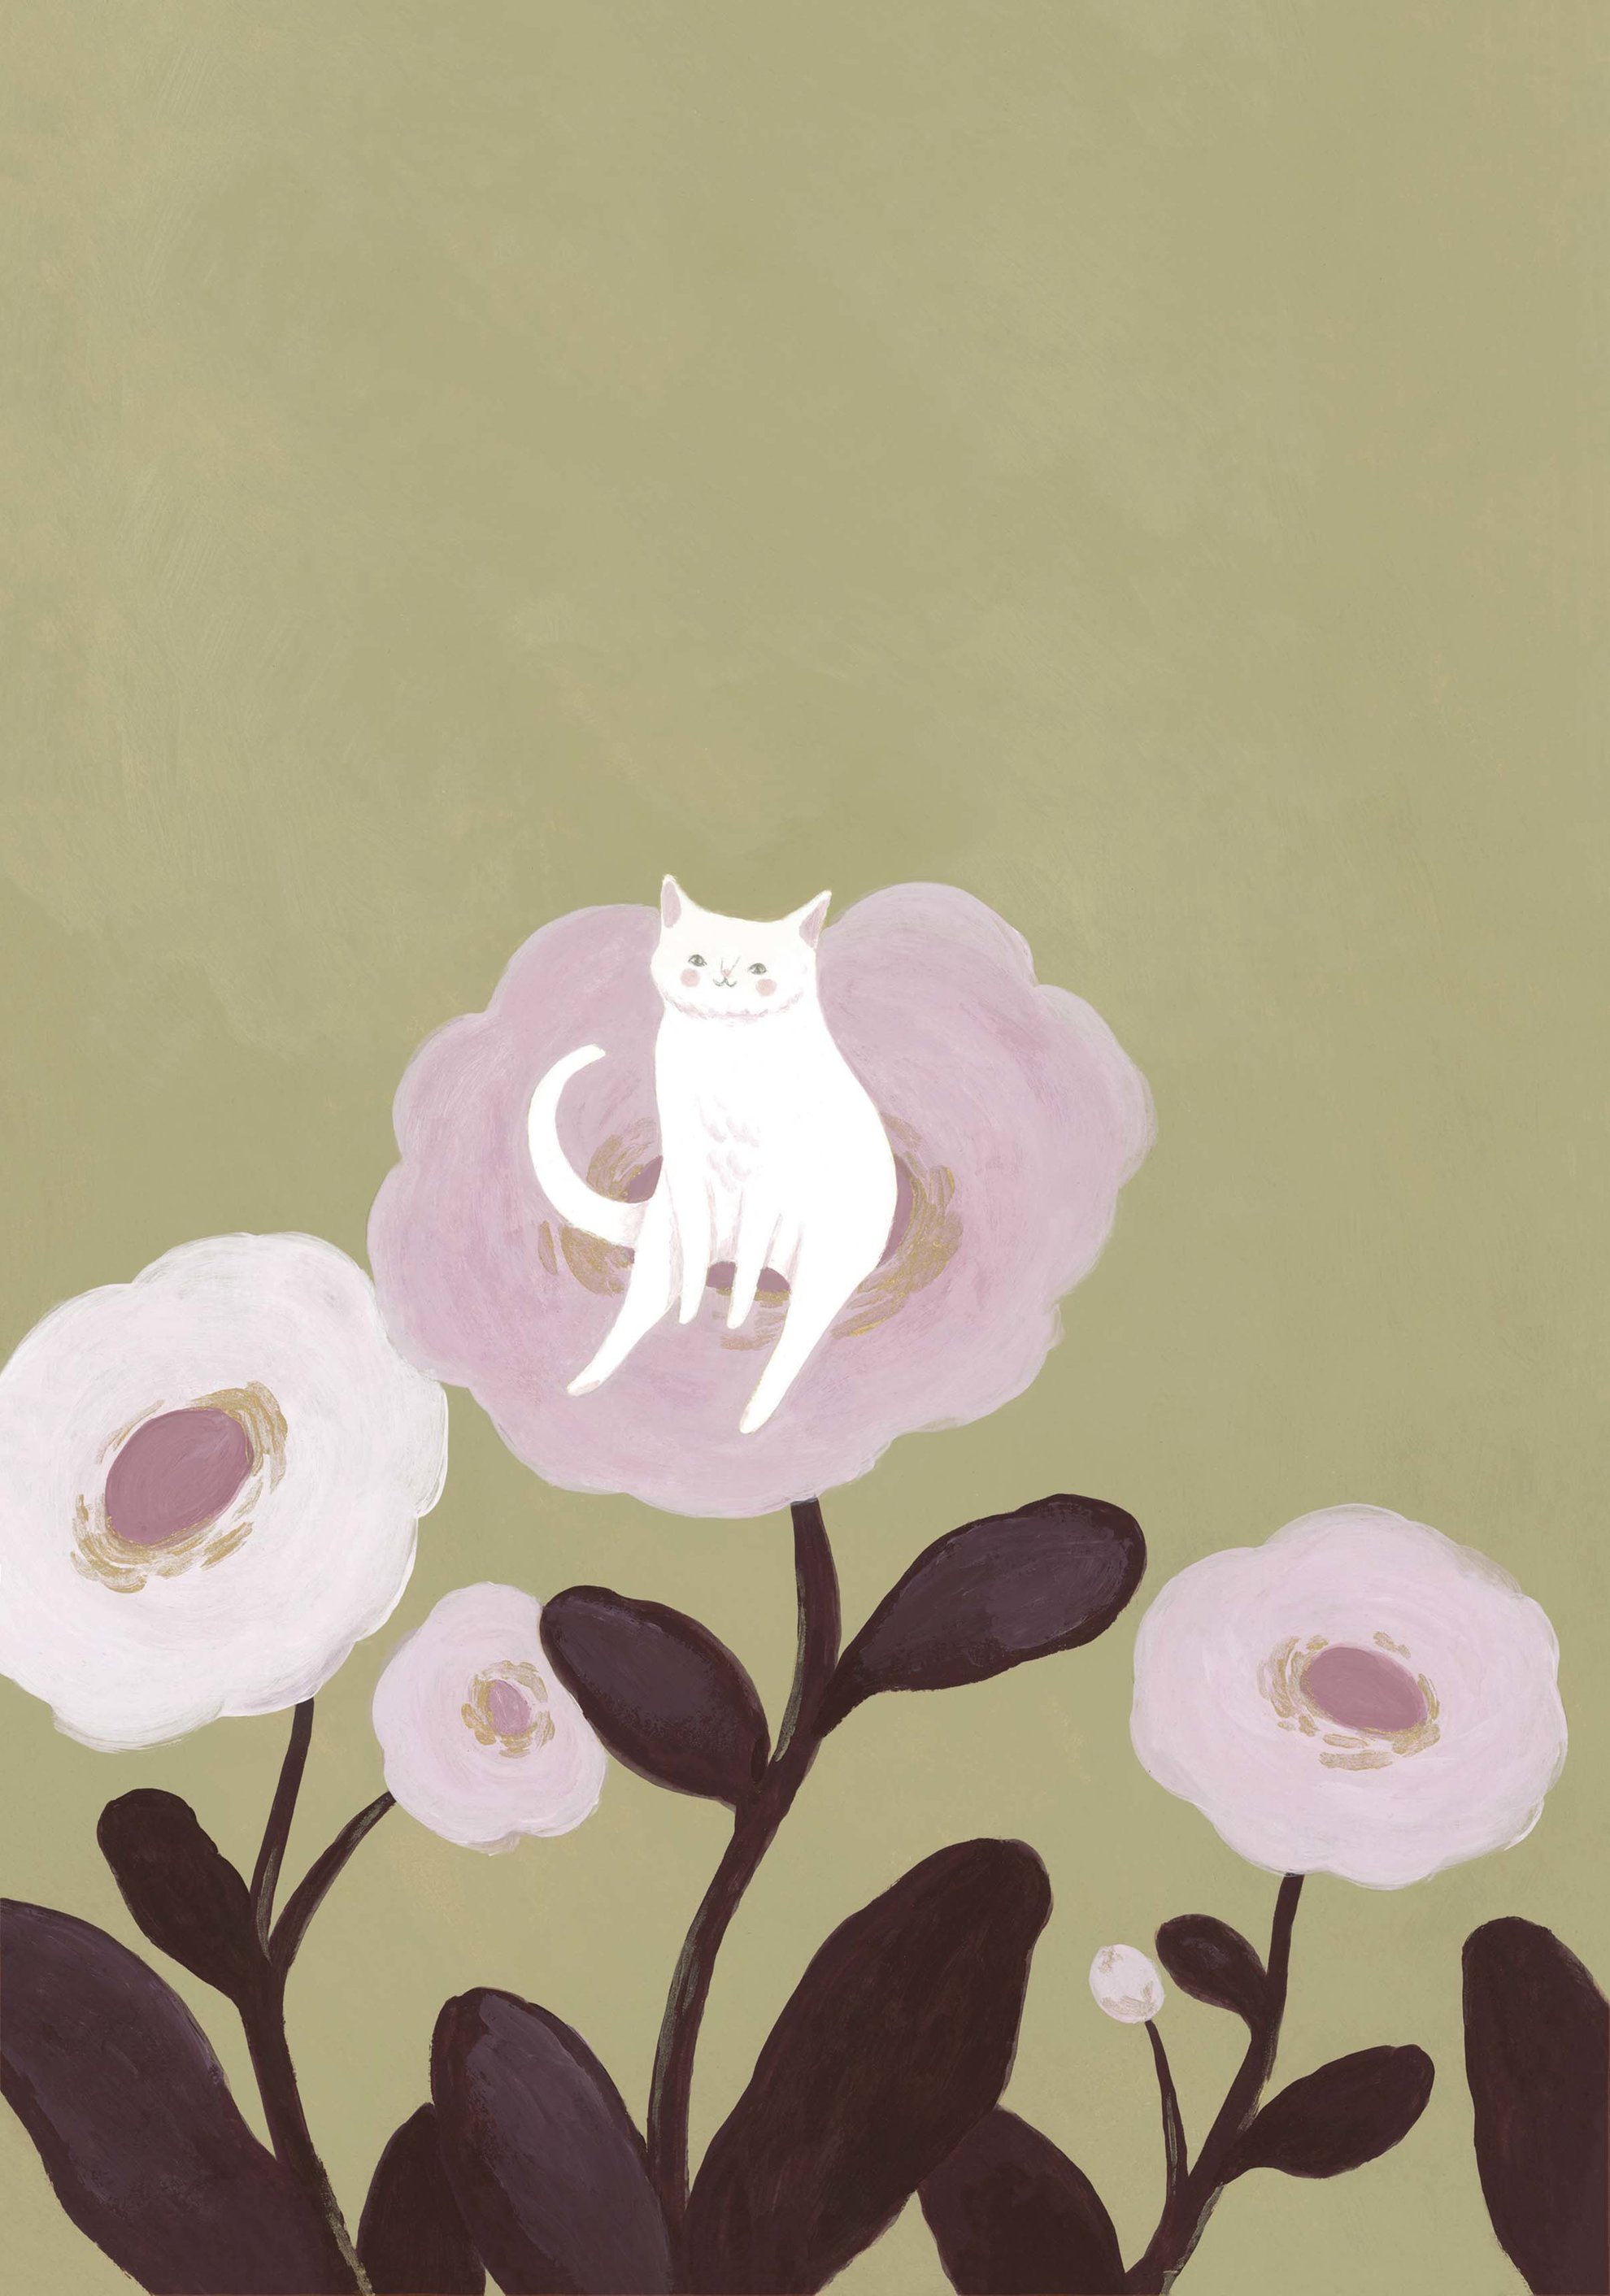 Chat blanc parmi les fleurs